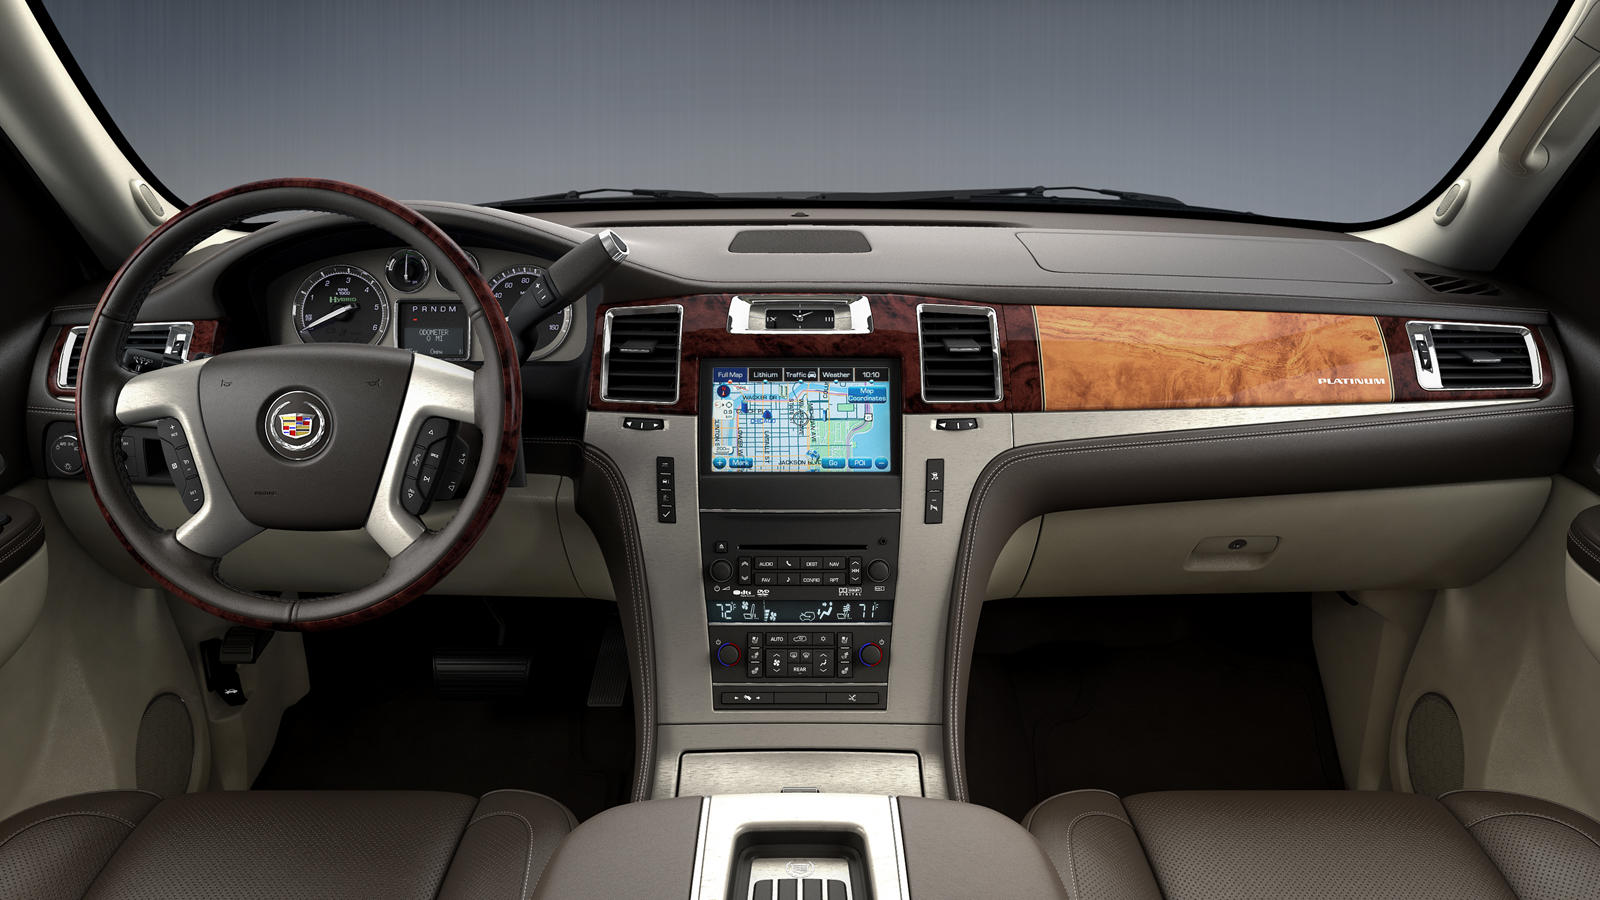 2010 Cadillac Escalade Hybrid Interior Photos | CarBuzz